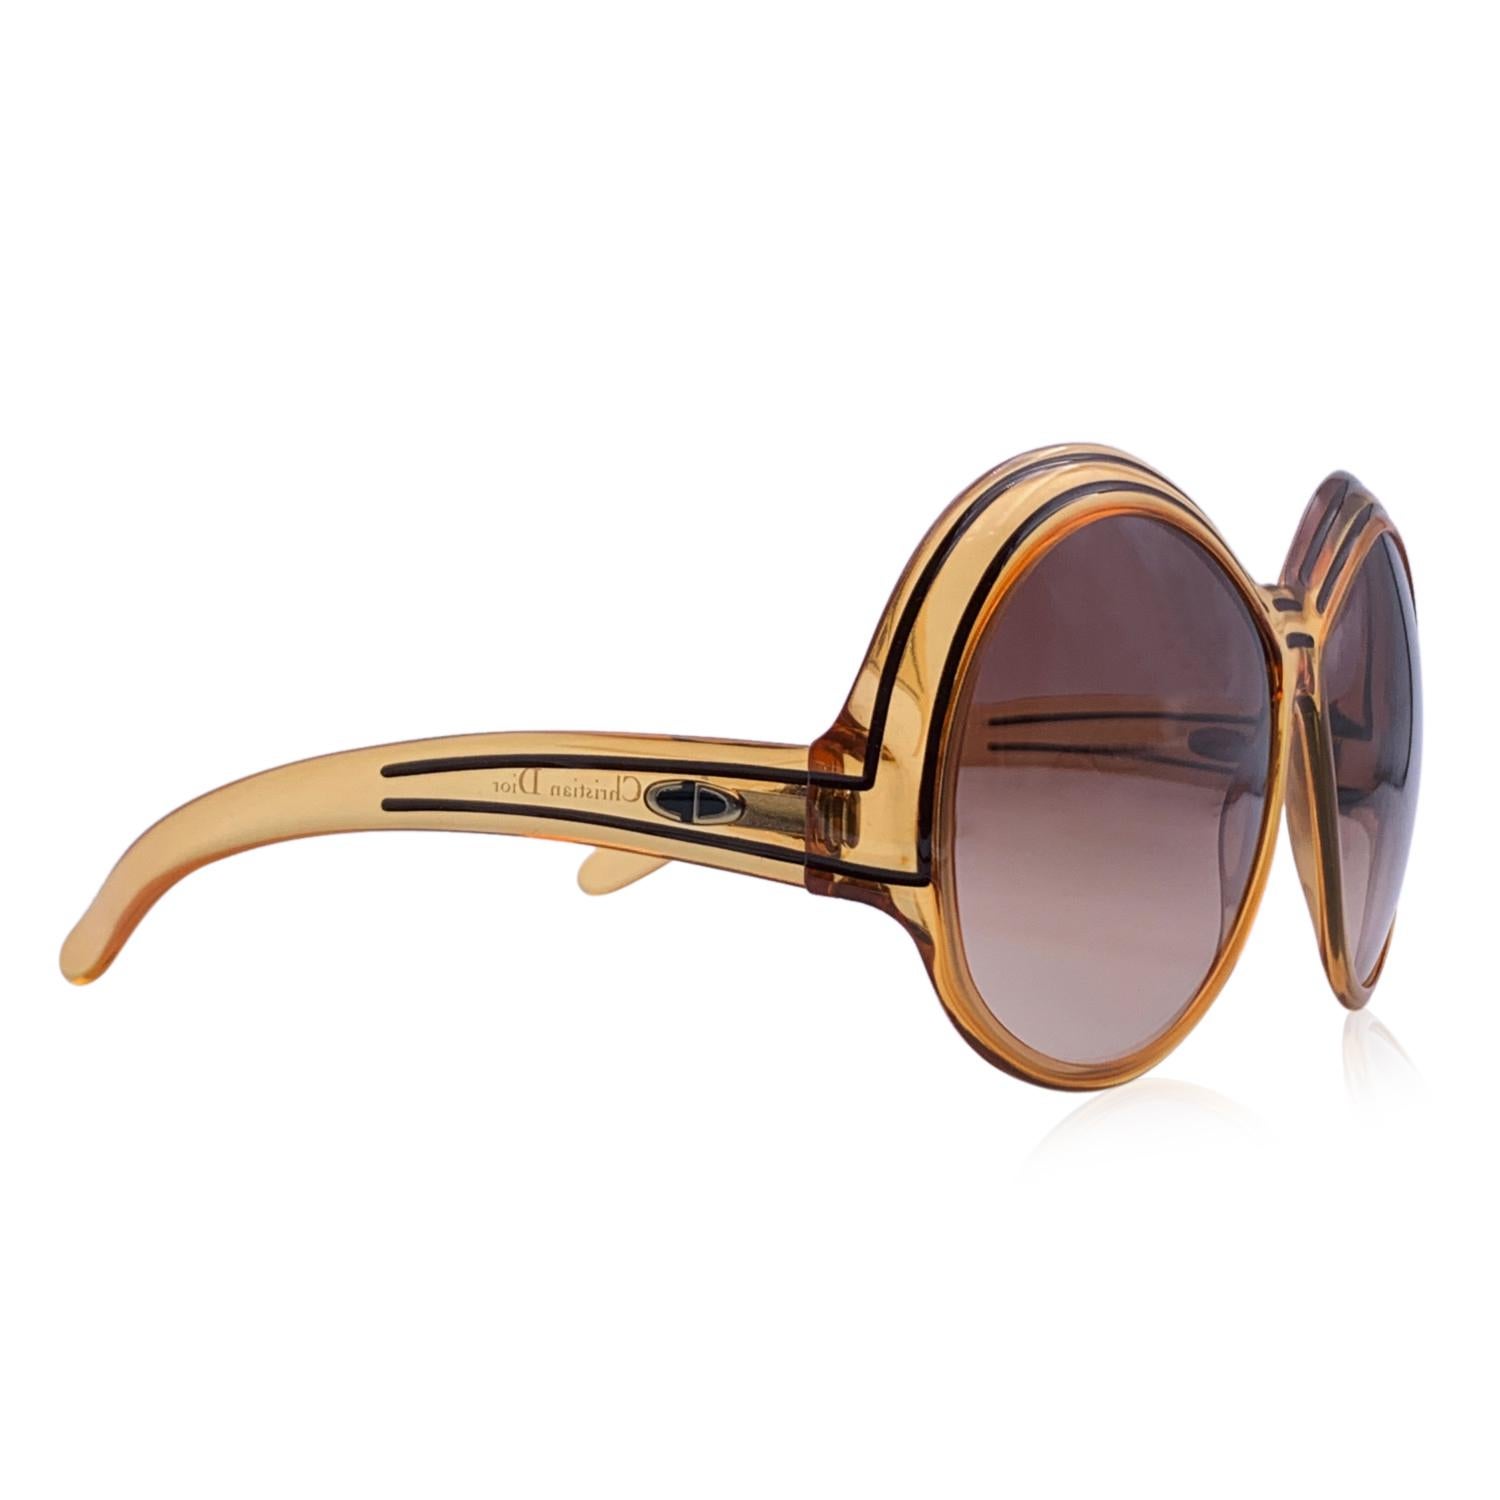 Vintage Christian Dior Sonnenbrille in Übergröße, Mod. 2040 - Spalte 10. Orangefarbener Optyl-Rahmen mit brauner Streifenverzierung. Original 100% Total UVA/UVB-Schutz in braunem Farbverlauf. CD-Logo auf den Bügeln. Hergestellt in